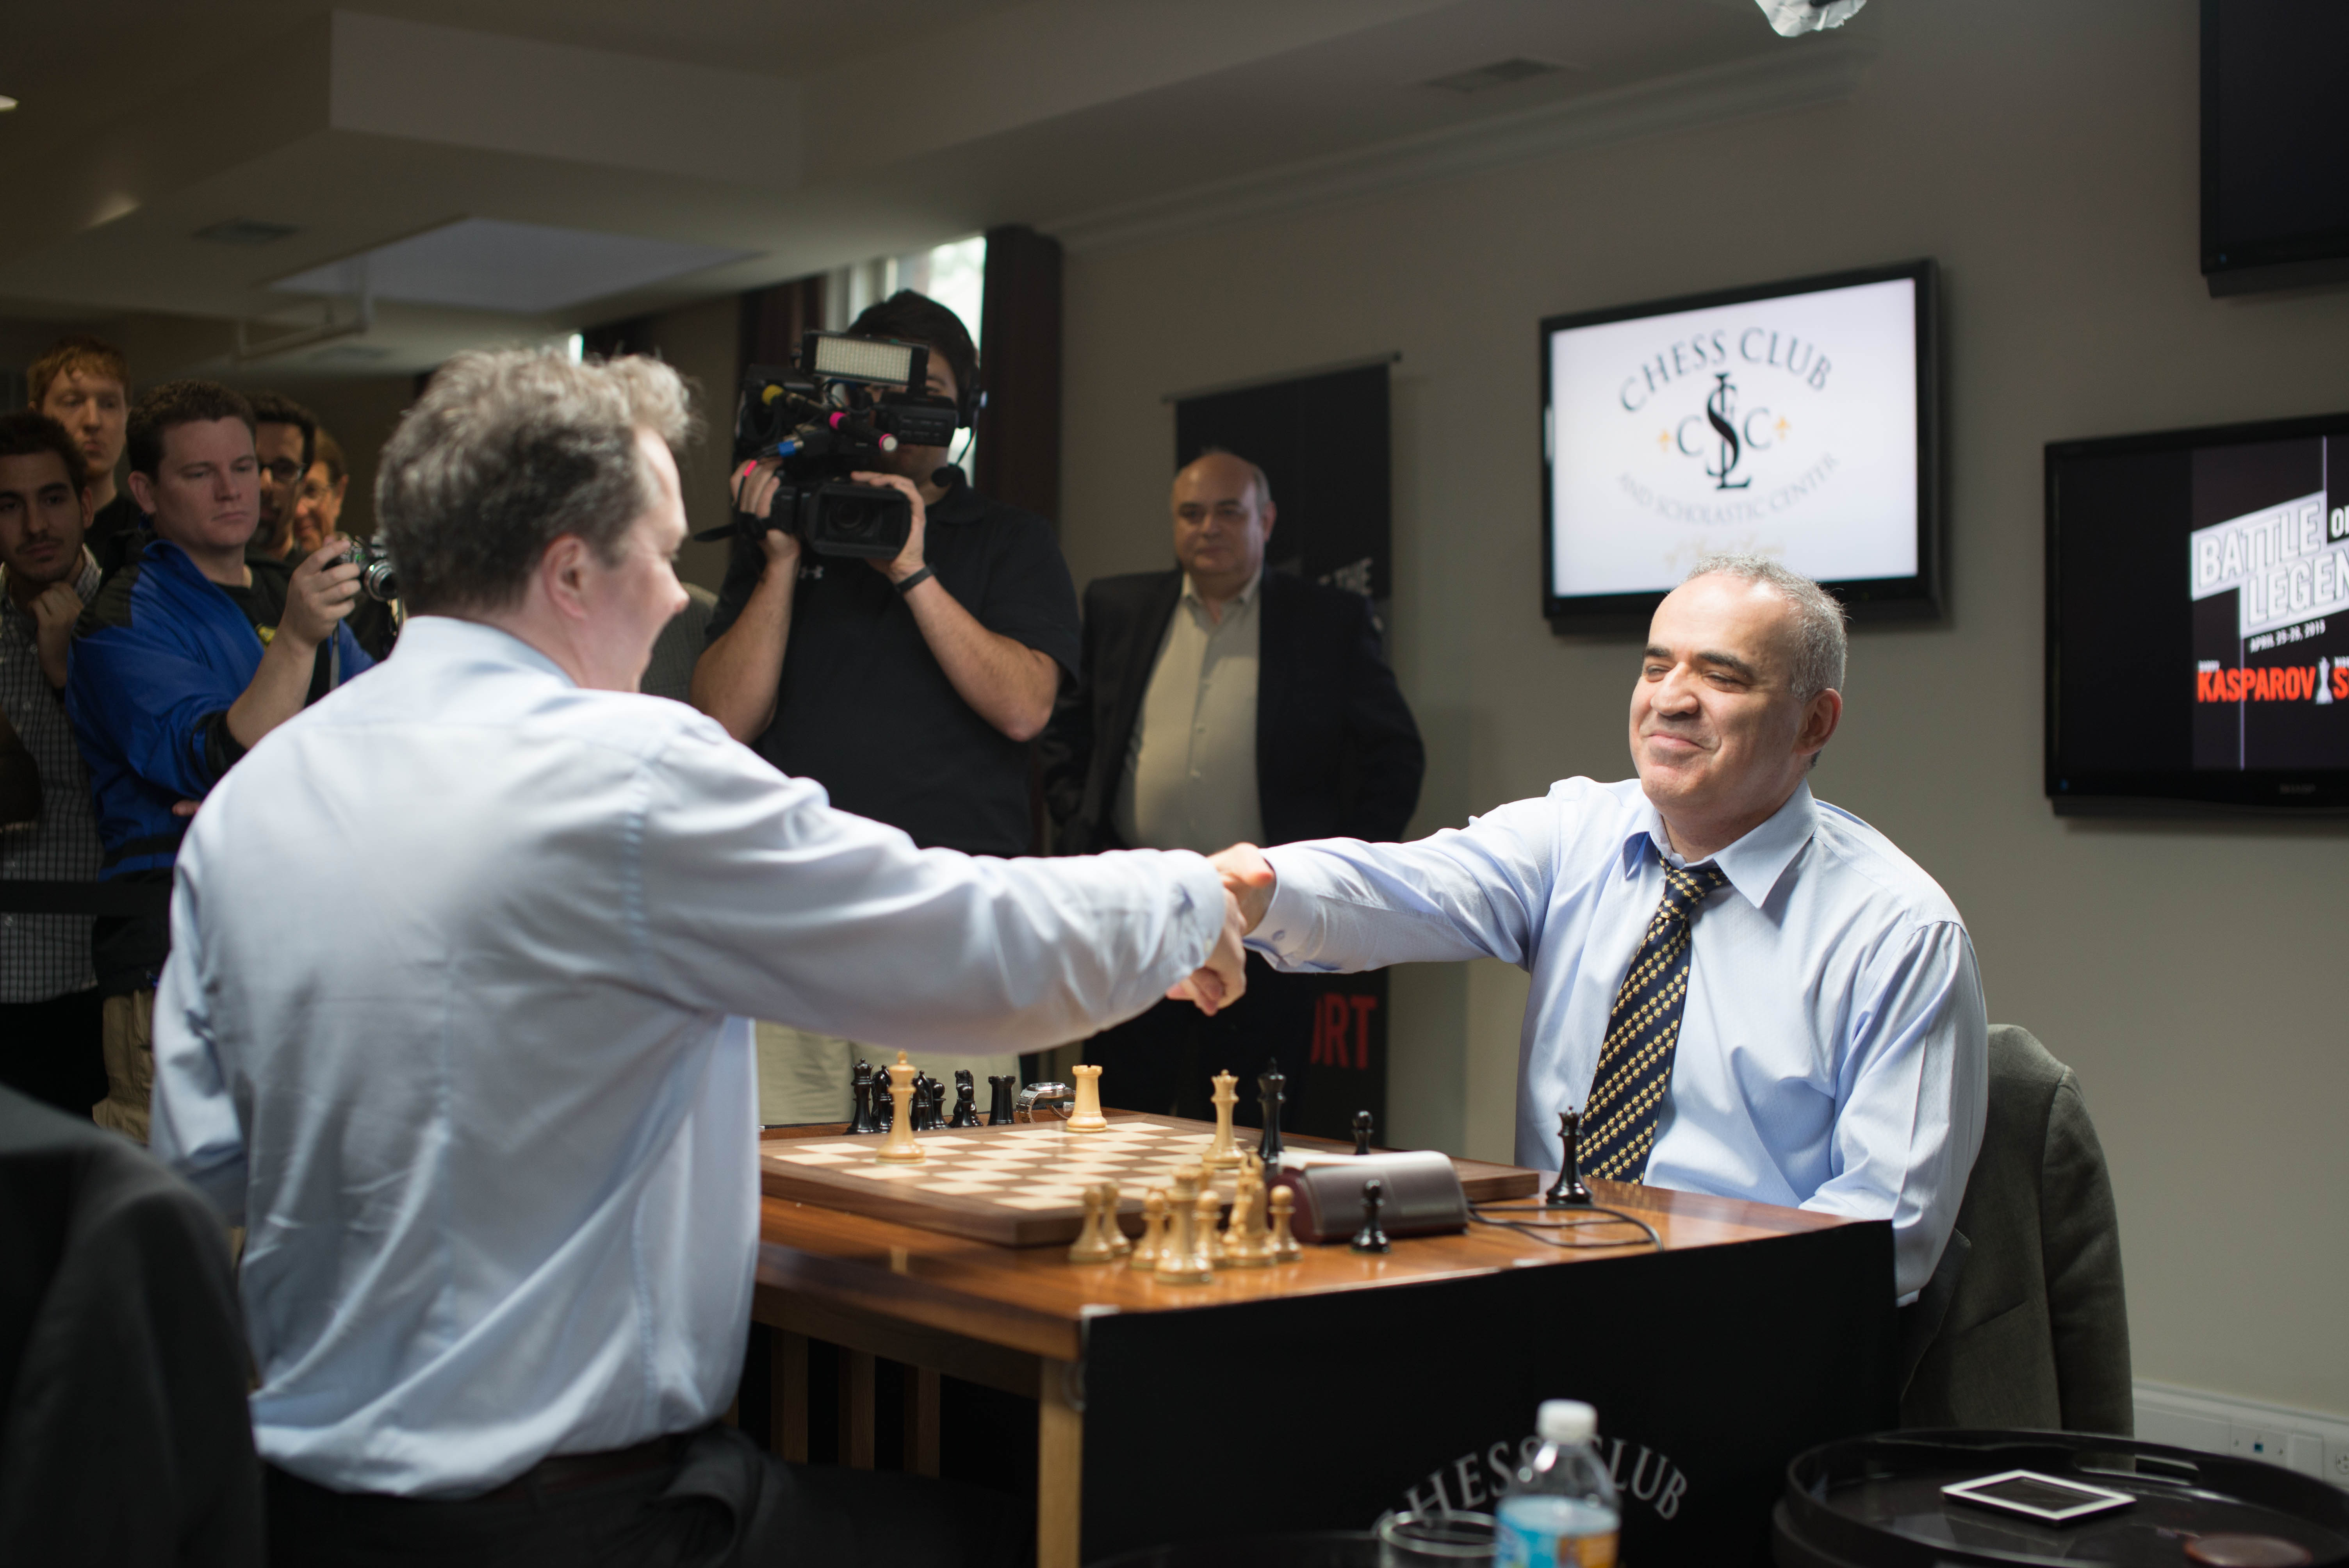 Nigel Short VS Garry Kasparov , Sicilian Defense 🌎 Belgrade